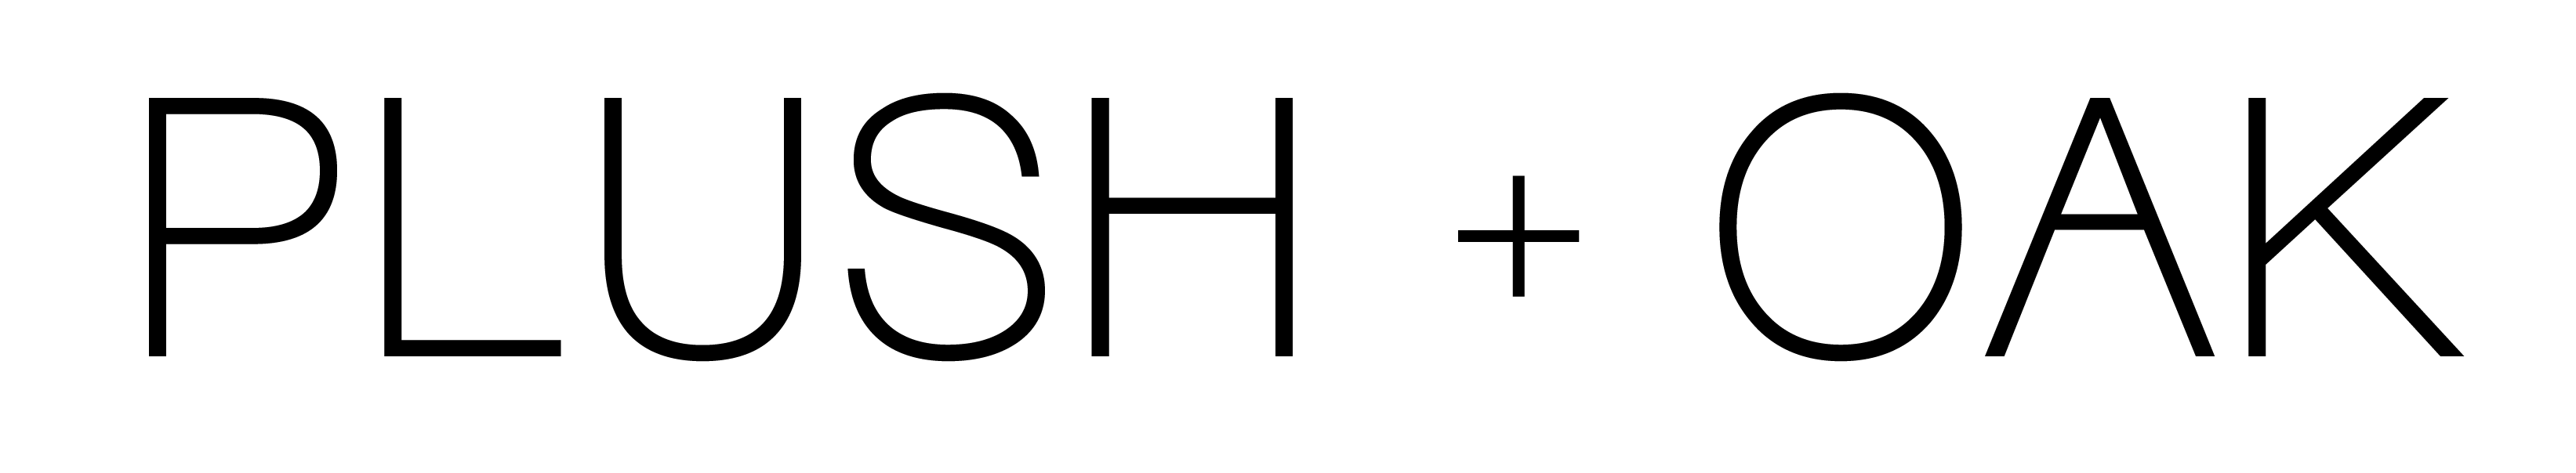 Plush + Oak logo